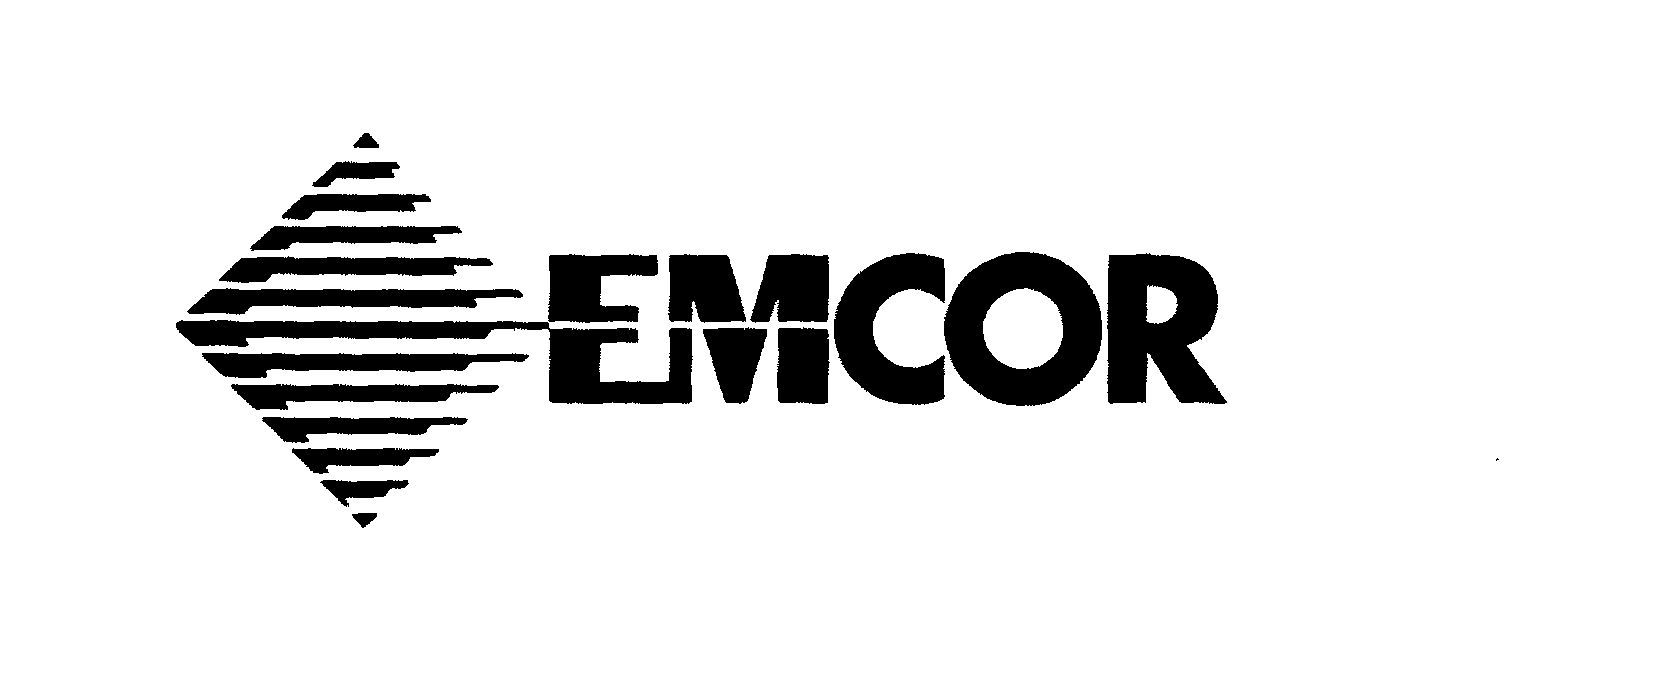 Trademark Logo EMCOR